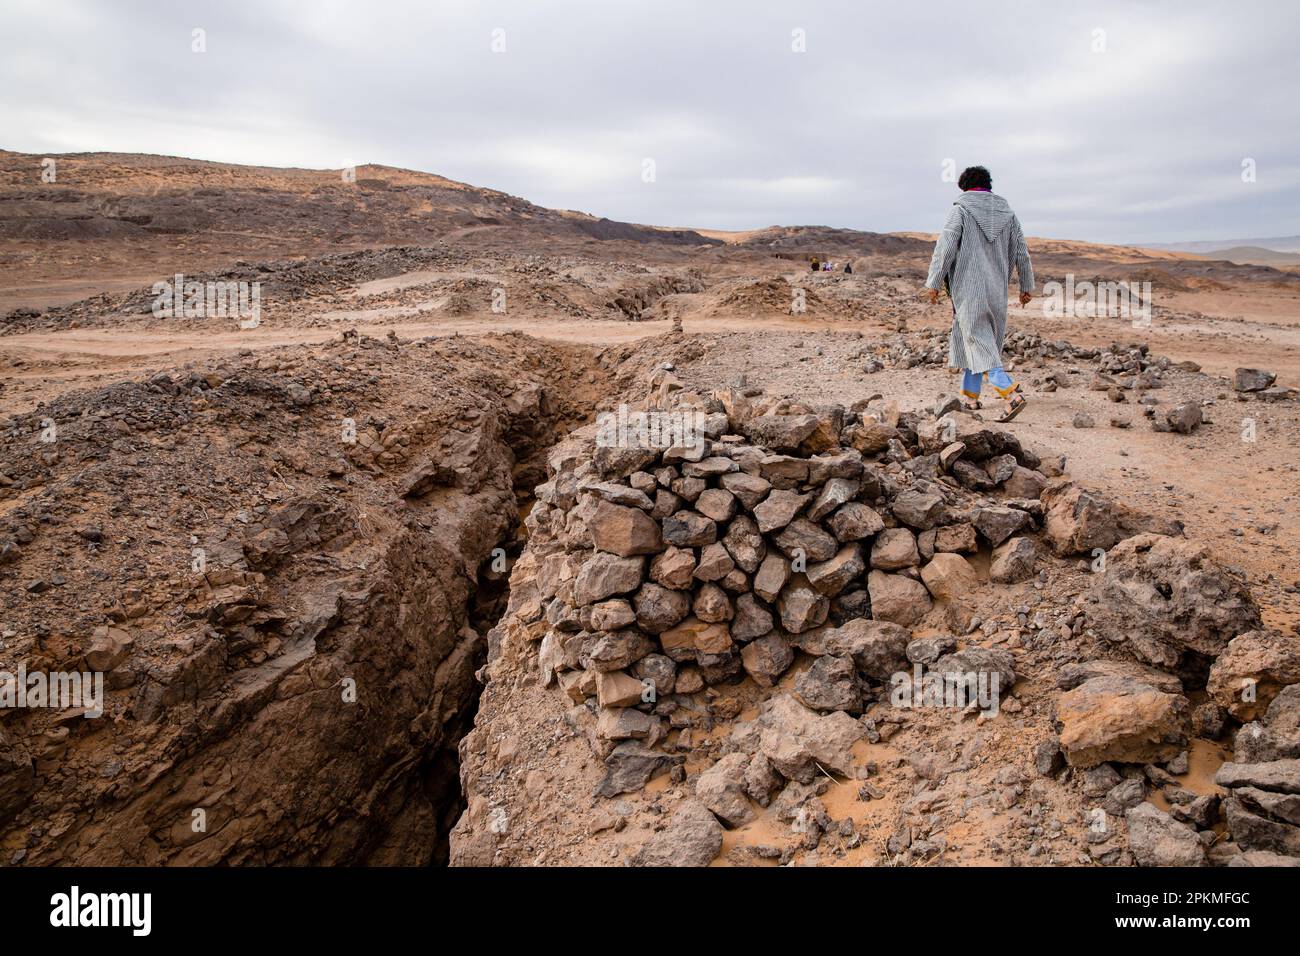 Un berbère portant une djellaba marche parmi les pierres dans le désert Banque D'Images